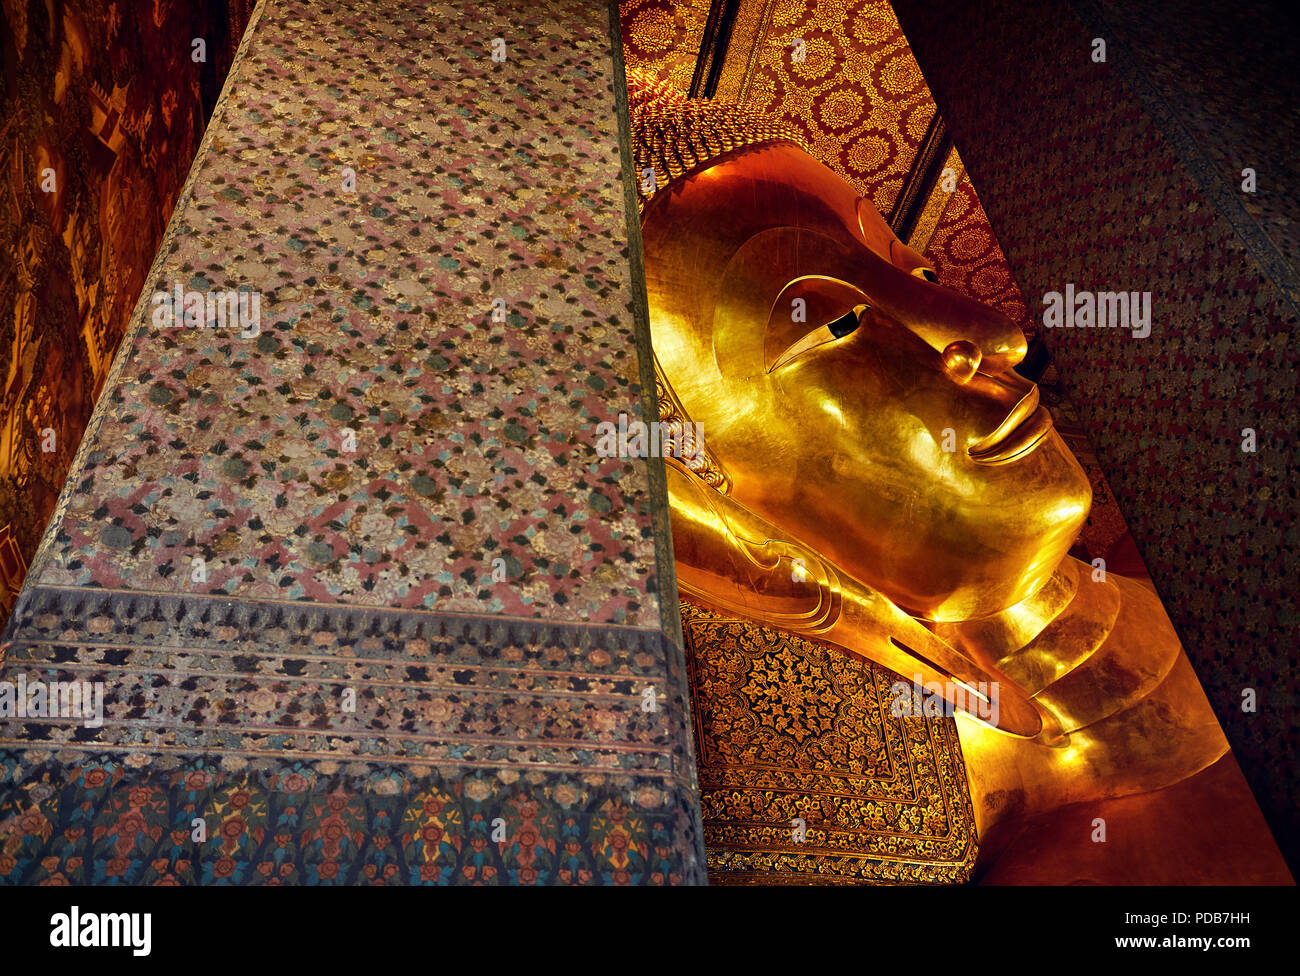 Famosa Statua del Grande Buddha d'oro di Wat Pho tempio a Bangkok, in Thailandia. Simbolo della cultura buddhista. Foto Stock